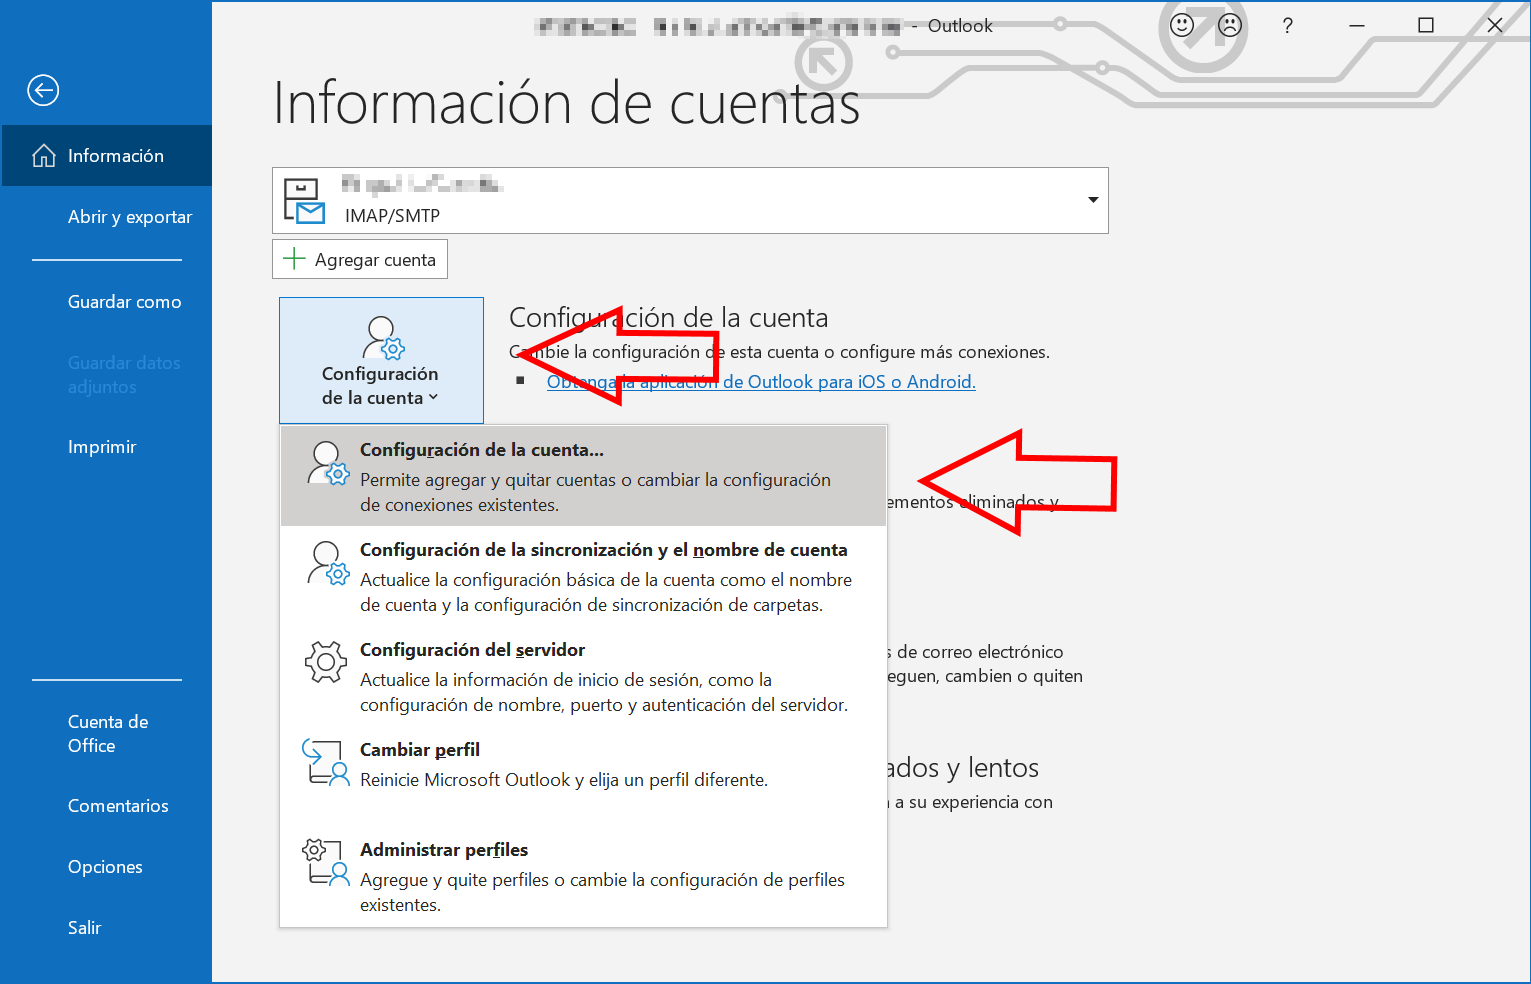 Cambiar el remitente de Outlook: abre la configuración de la cuenta 